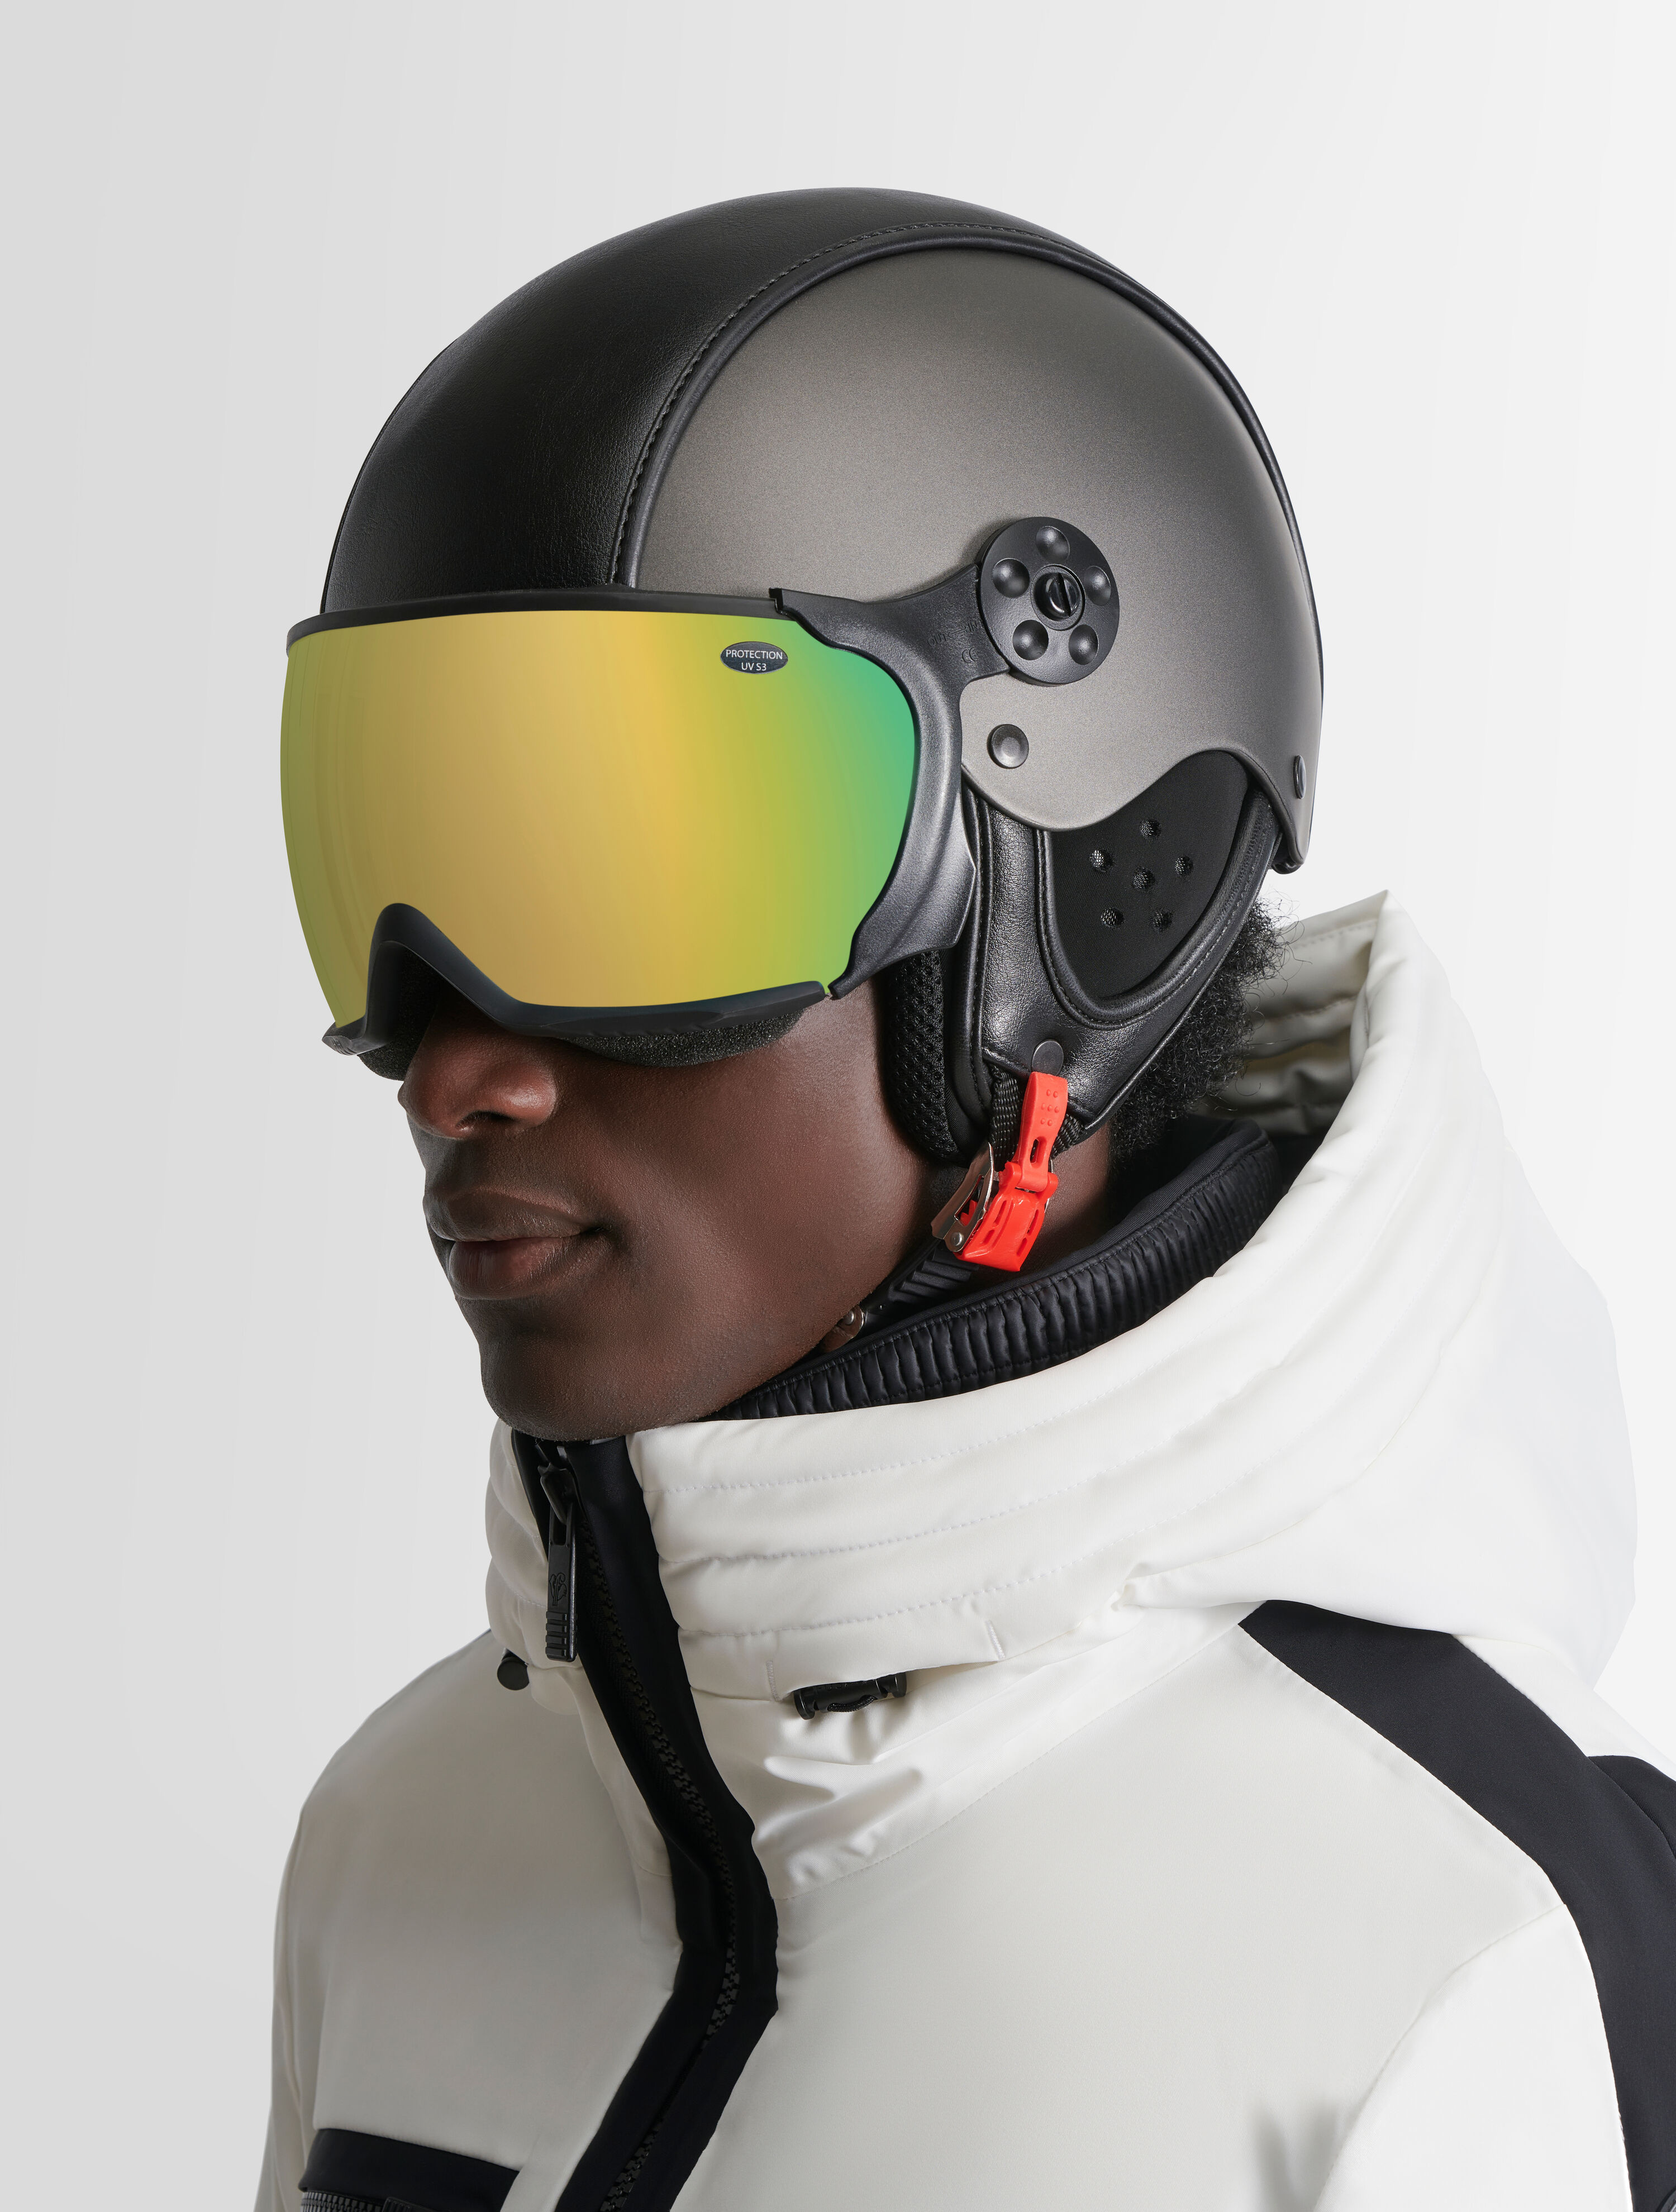 Couvre-casque de ski personnalisé fabriqué en Europe 100 % sur